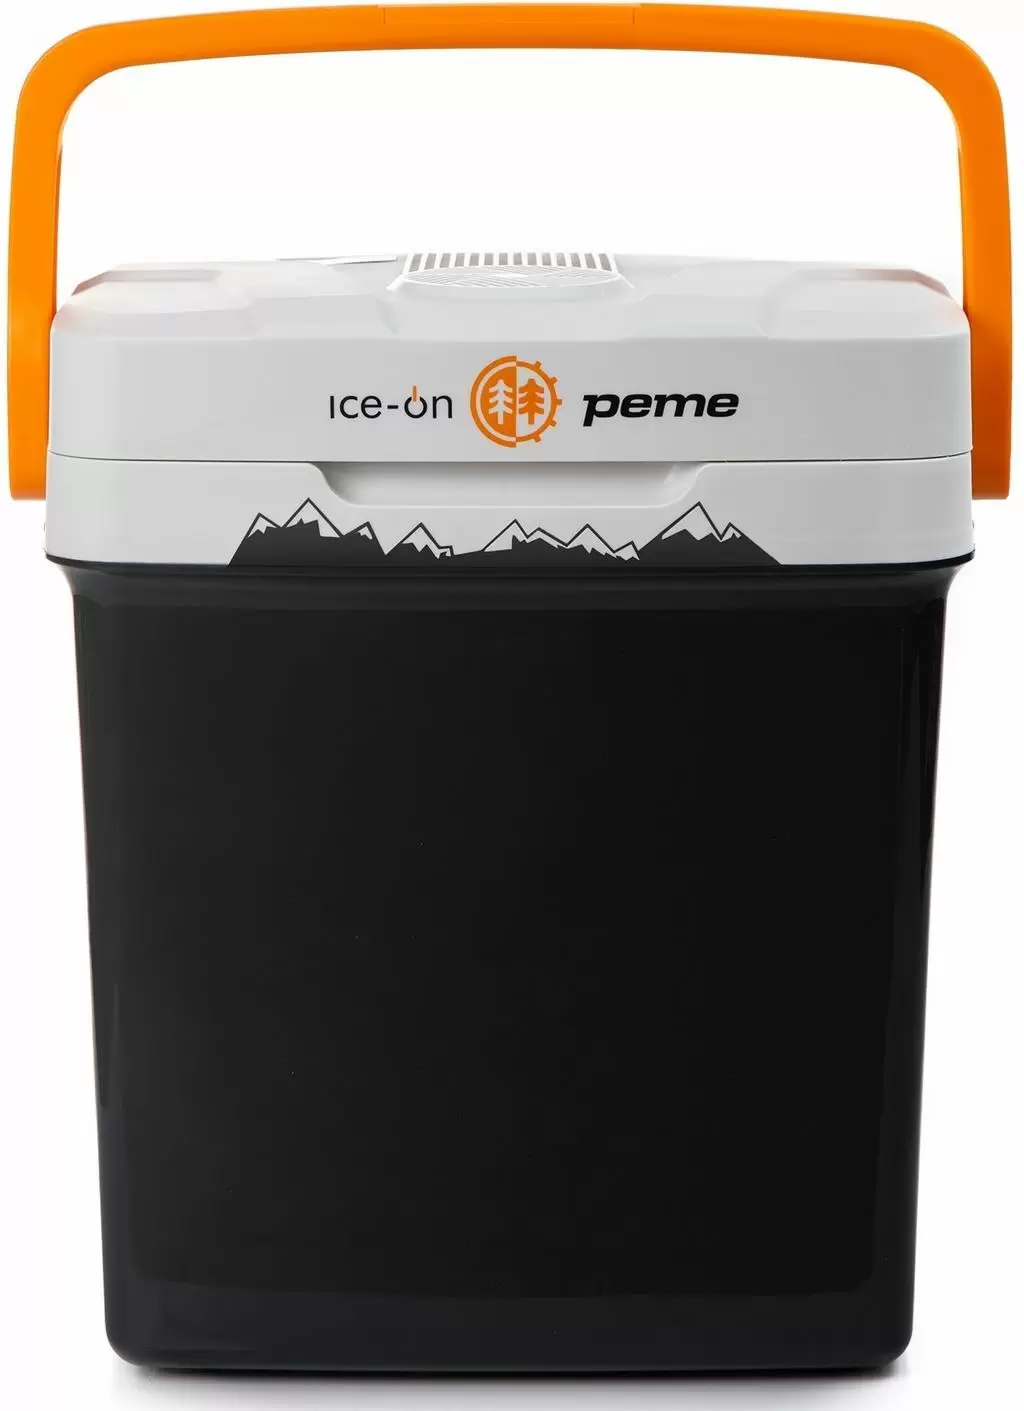 Frigider auto Peme Ice-on 27L, negru/portocaliu